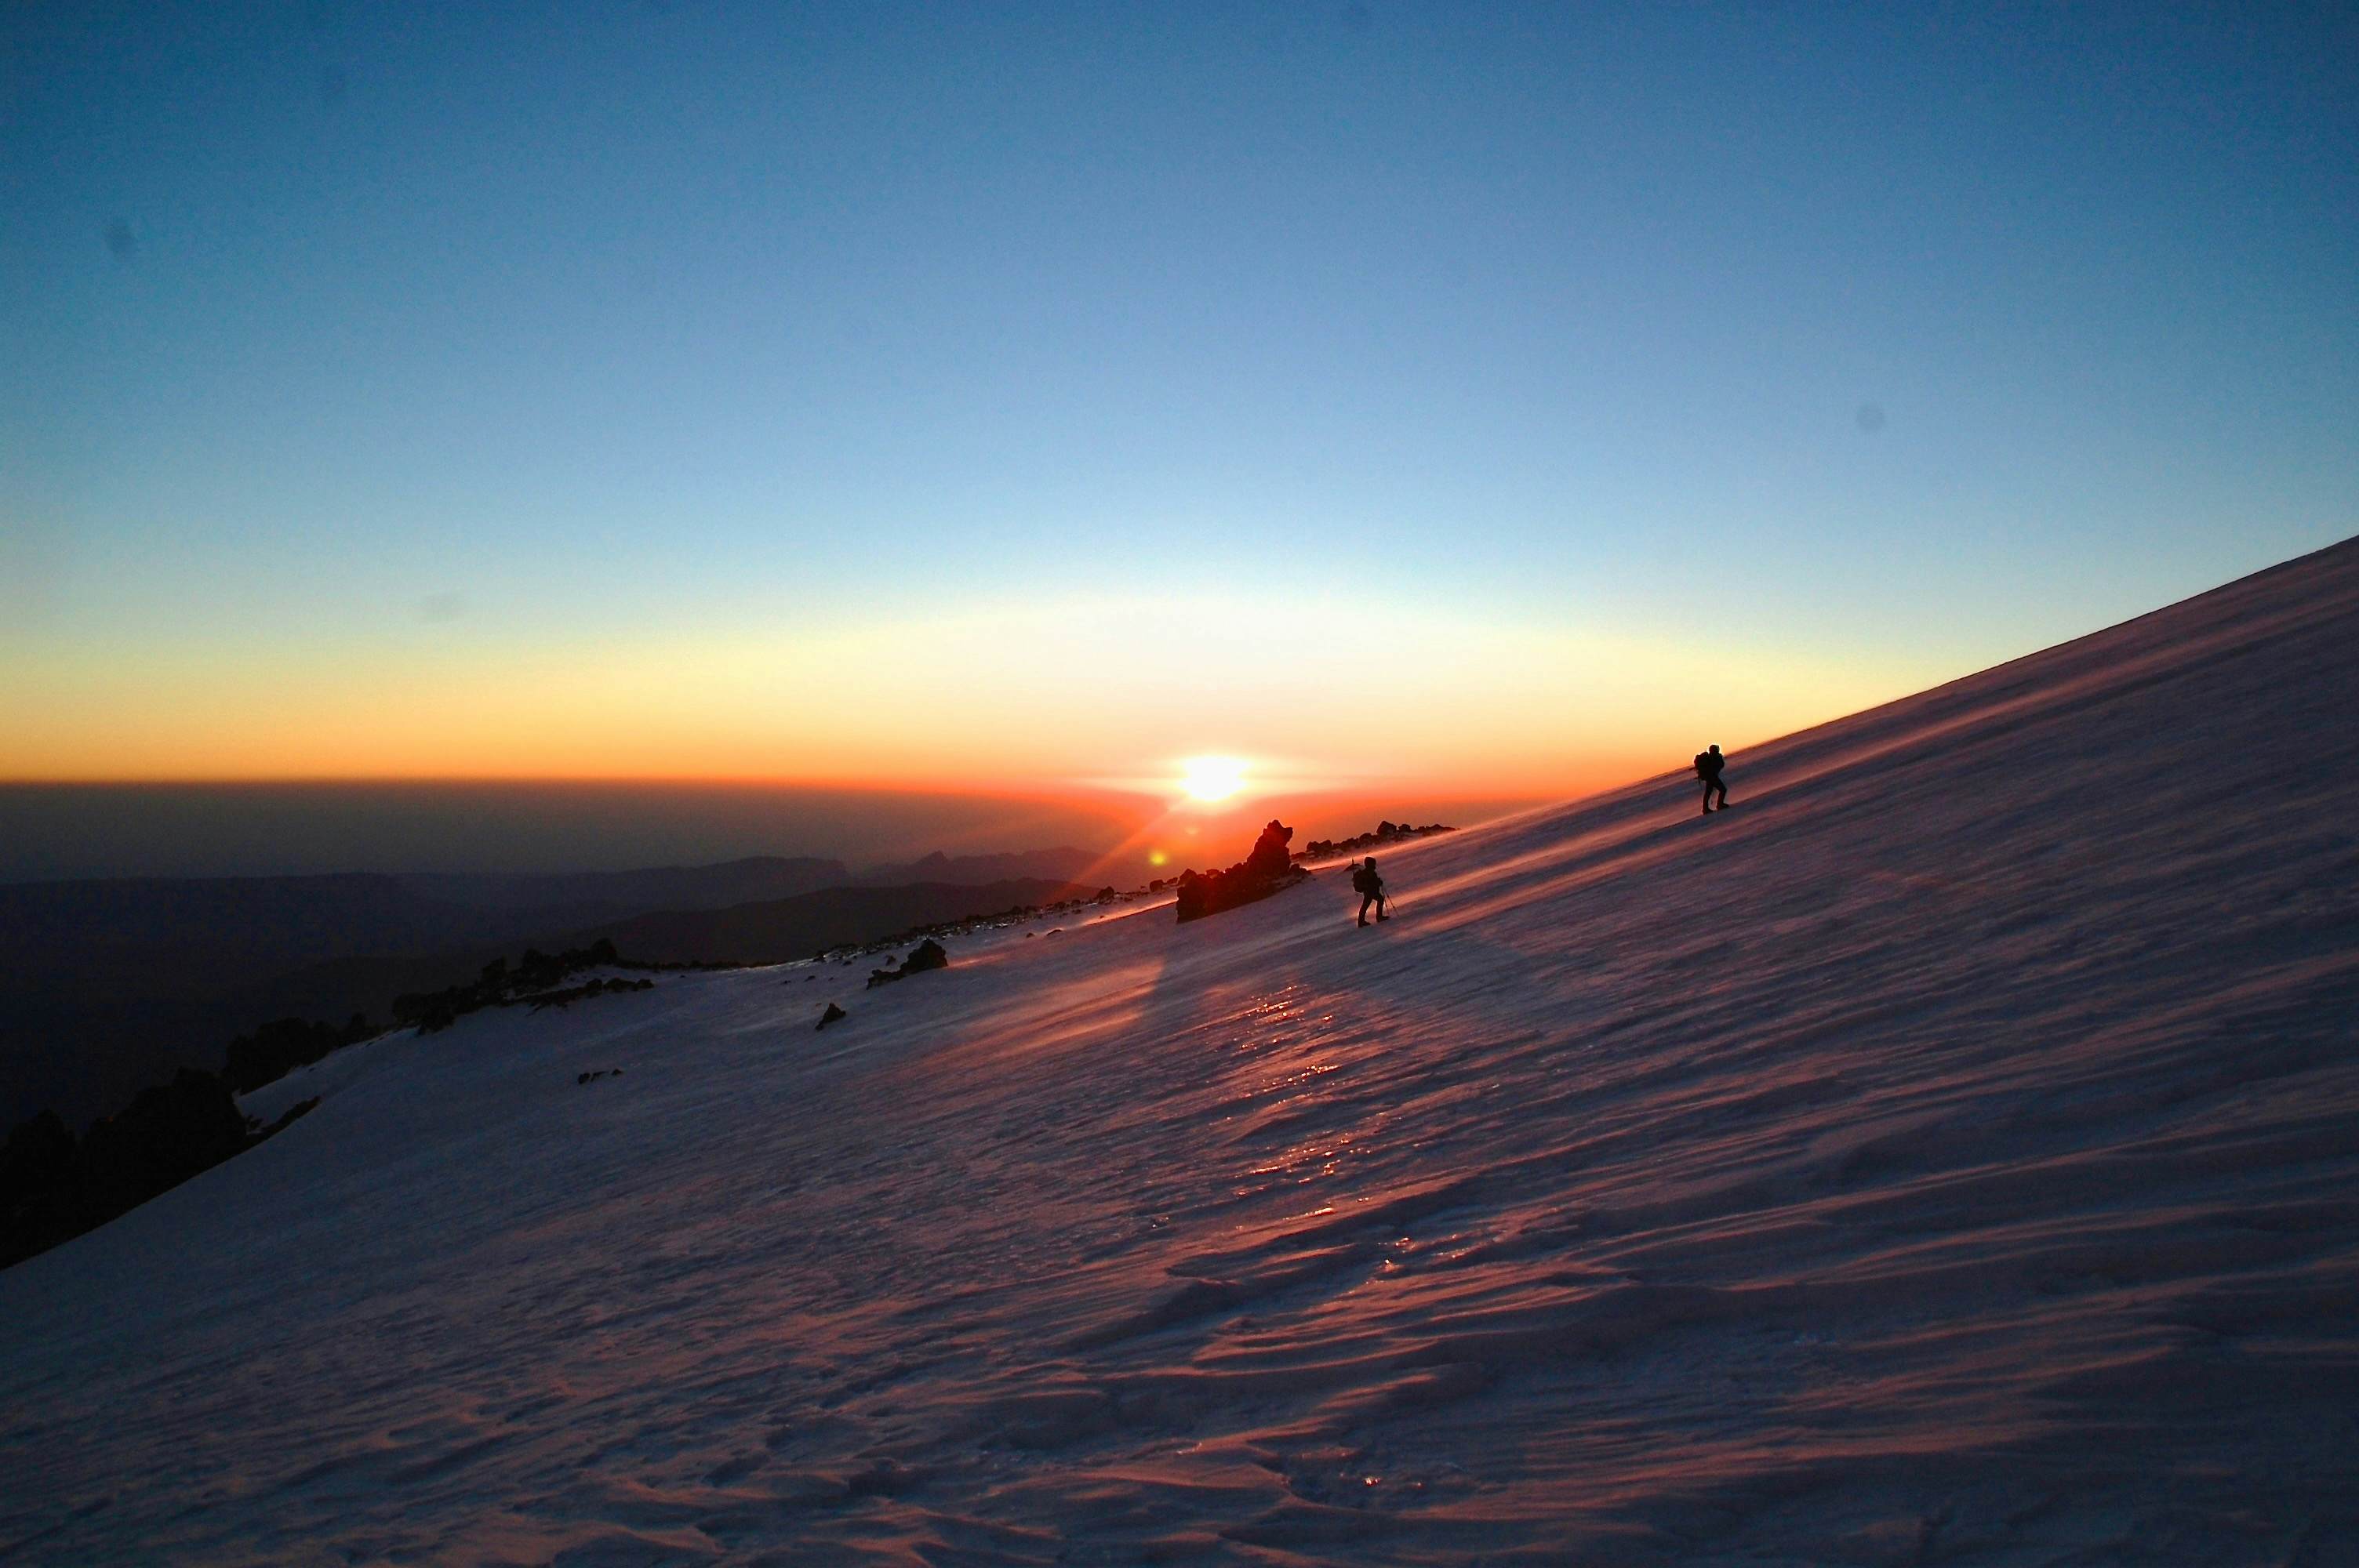 Sonnenaufgang. Zwei andere Bergsteiger auf dem Weg zum Ostgipfel